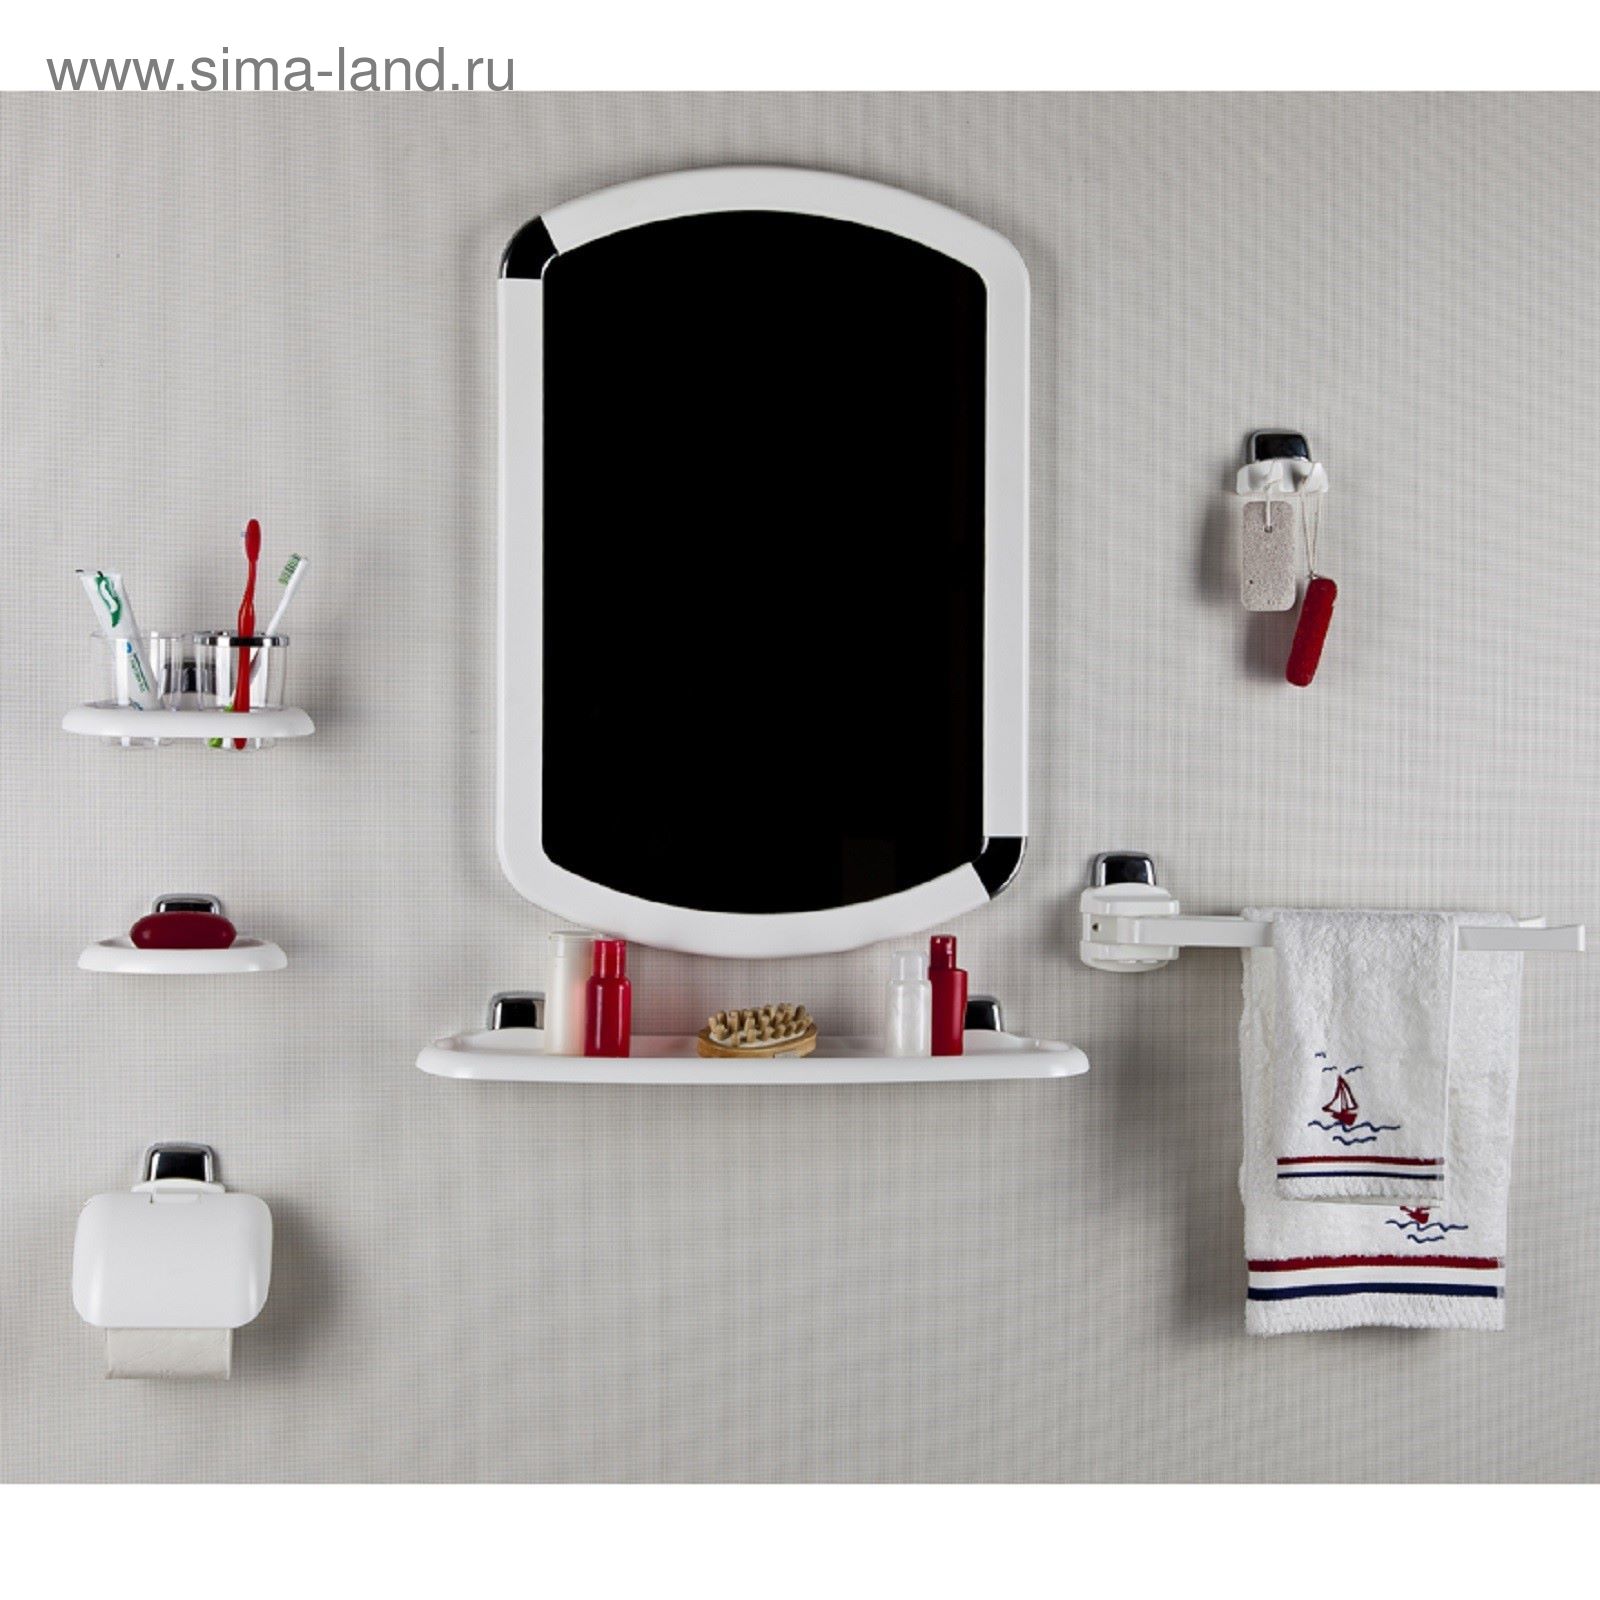 Комплект для ванны с зеркалом. Комплект для ванной комнаты с зеркалом. Набор для ванной с зеркалом. Набор для ванной комнаты пластиковый. Зеркало для ванной пластмассовое.